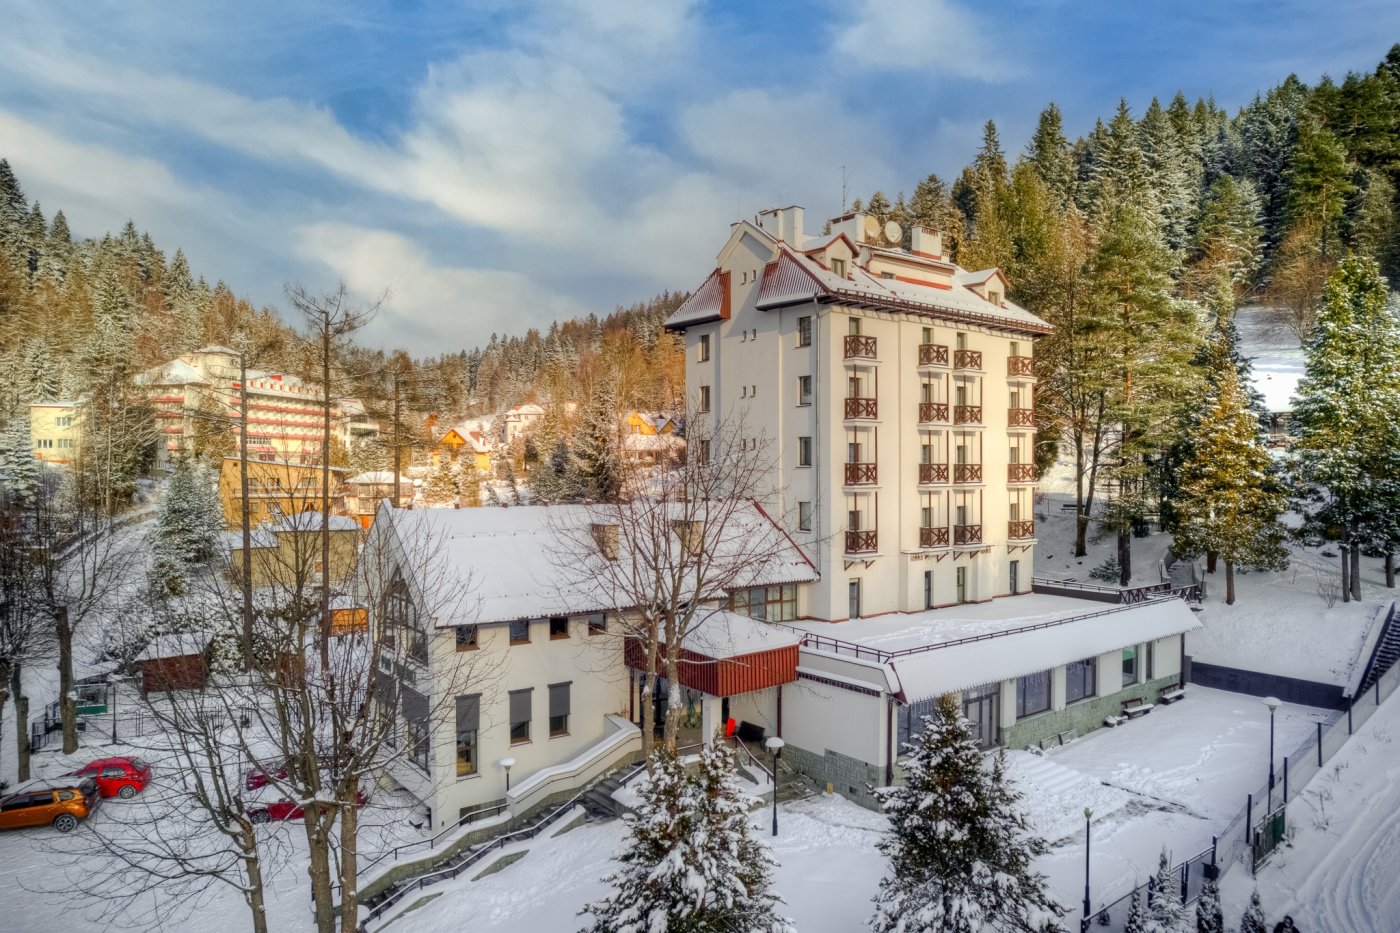 Hotel Pan Tadeusz